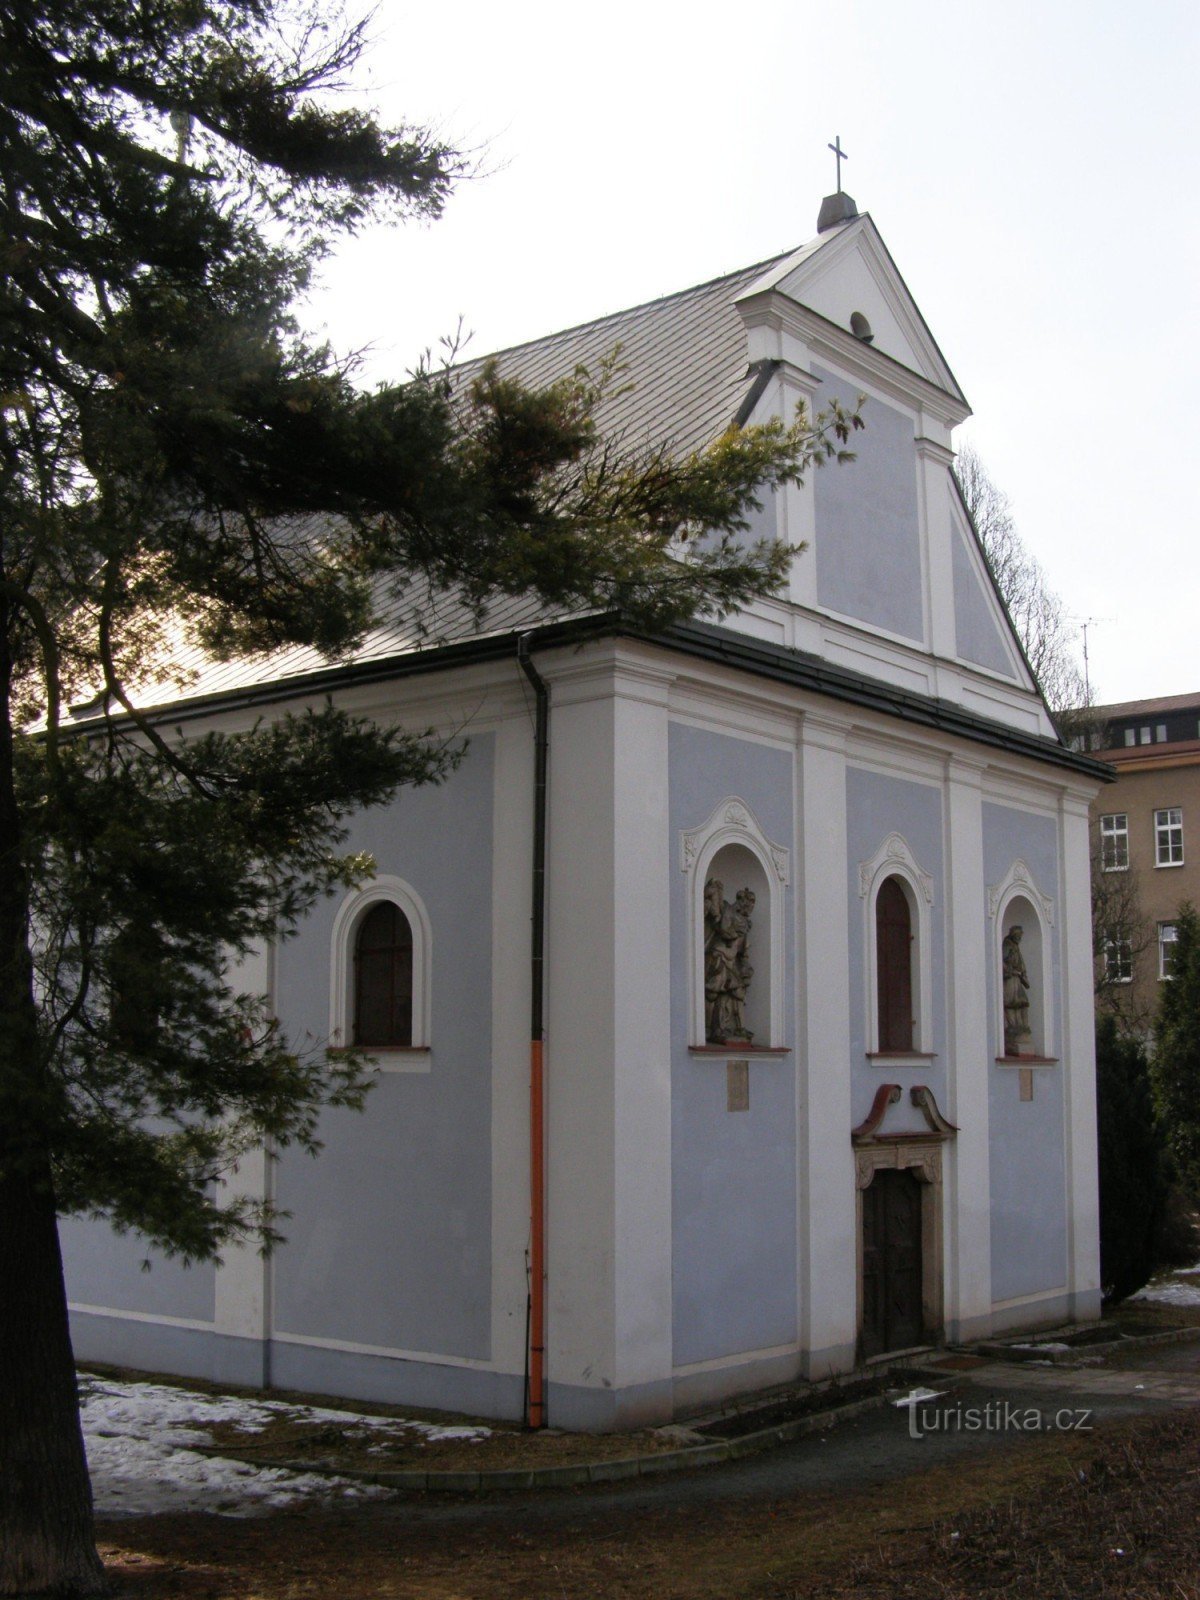 Náchod - nhà thờ St. Michaela